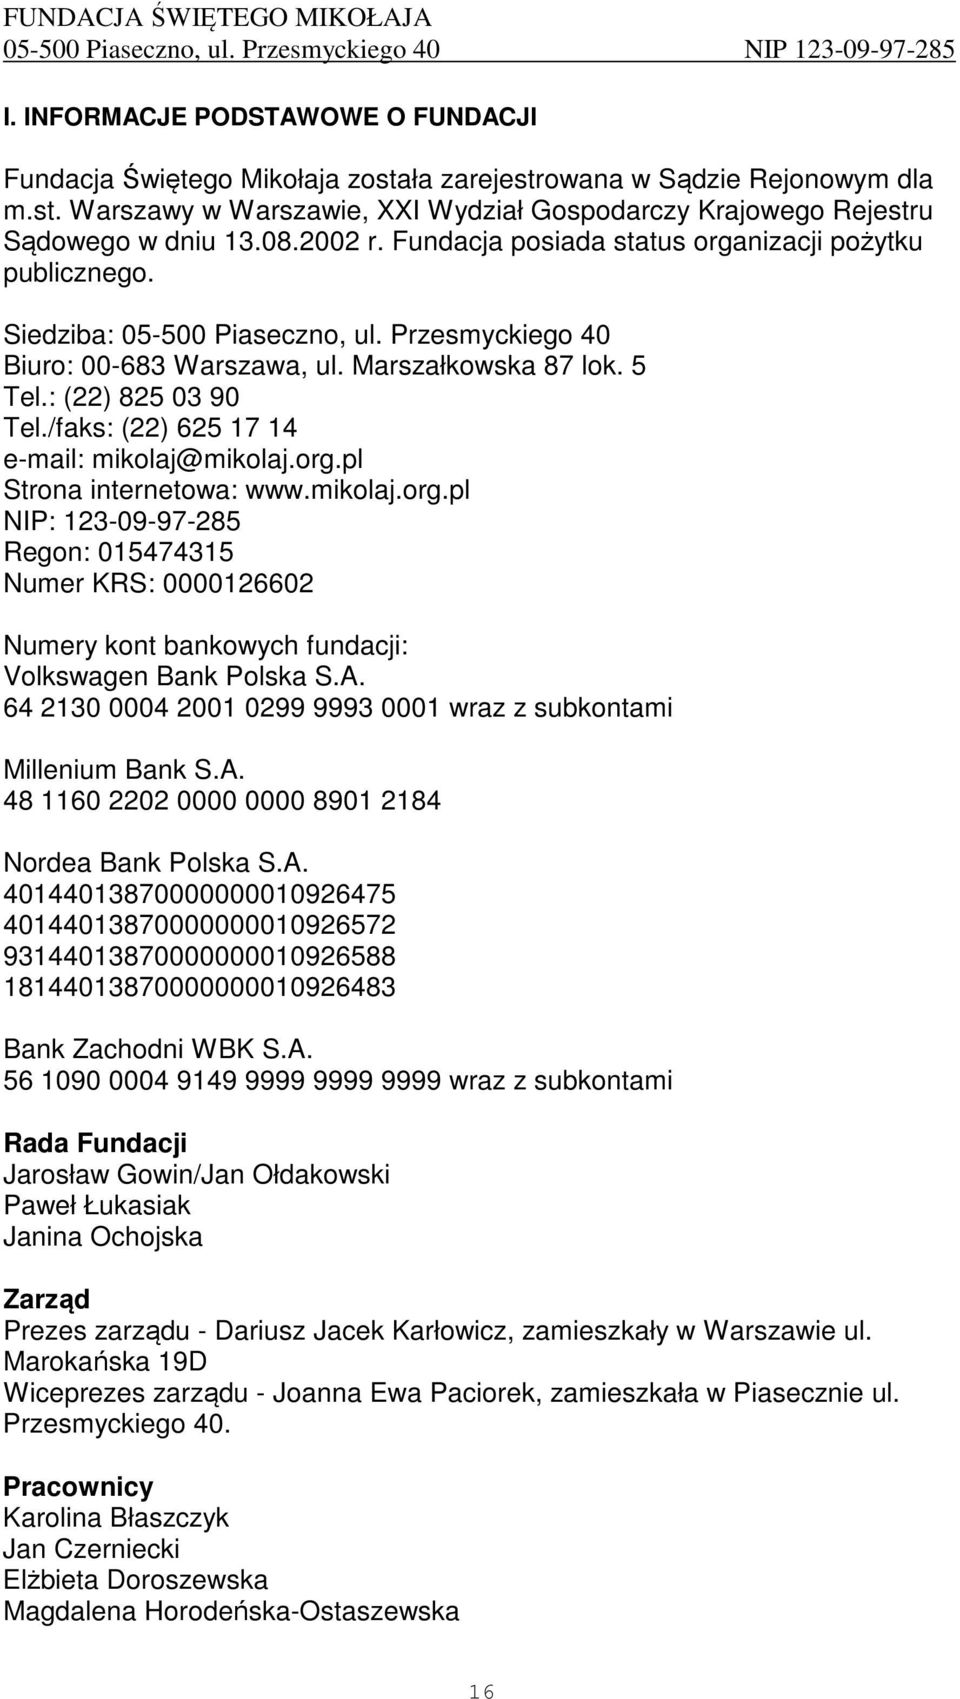 /faks: (22) 625 17 14 e-mail: mikolaj@mikolaj.org.pl Strona internetowa: www.mikolaj.org.pl NIP: 123-09-97-285 Regon: 015474315 Numer KRS: 0000126602 Numery kont bankowych fundacji: Volkswagen Bank Polska S.